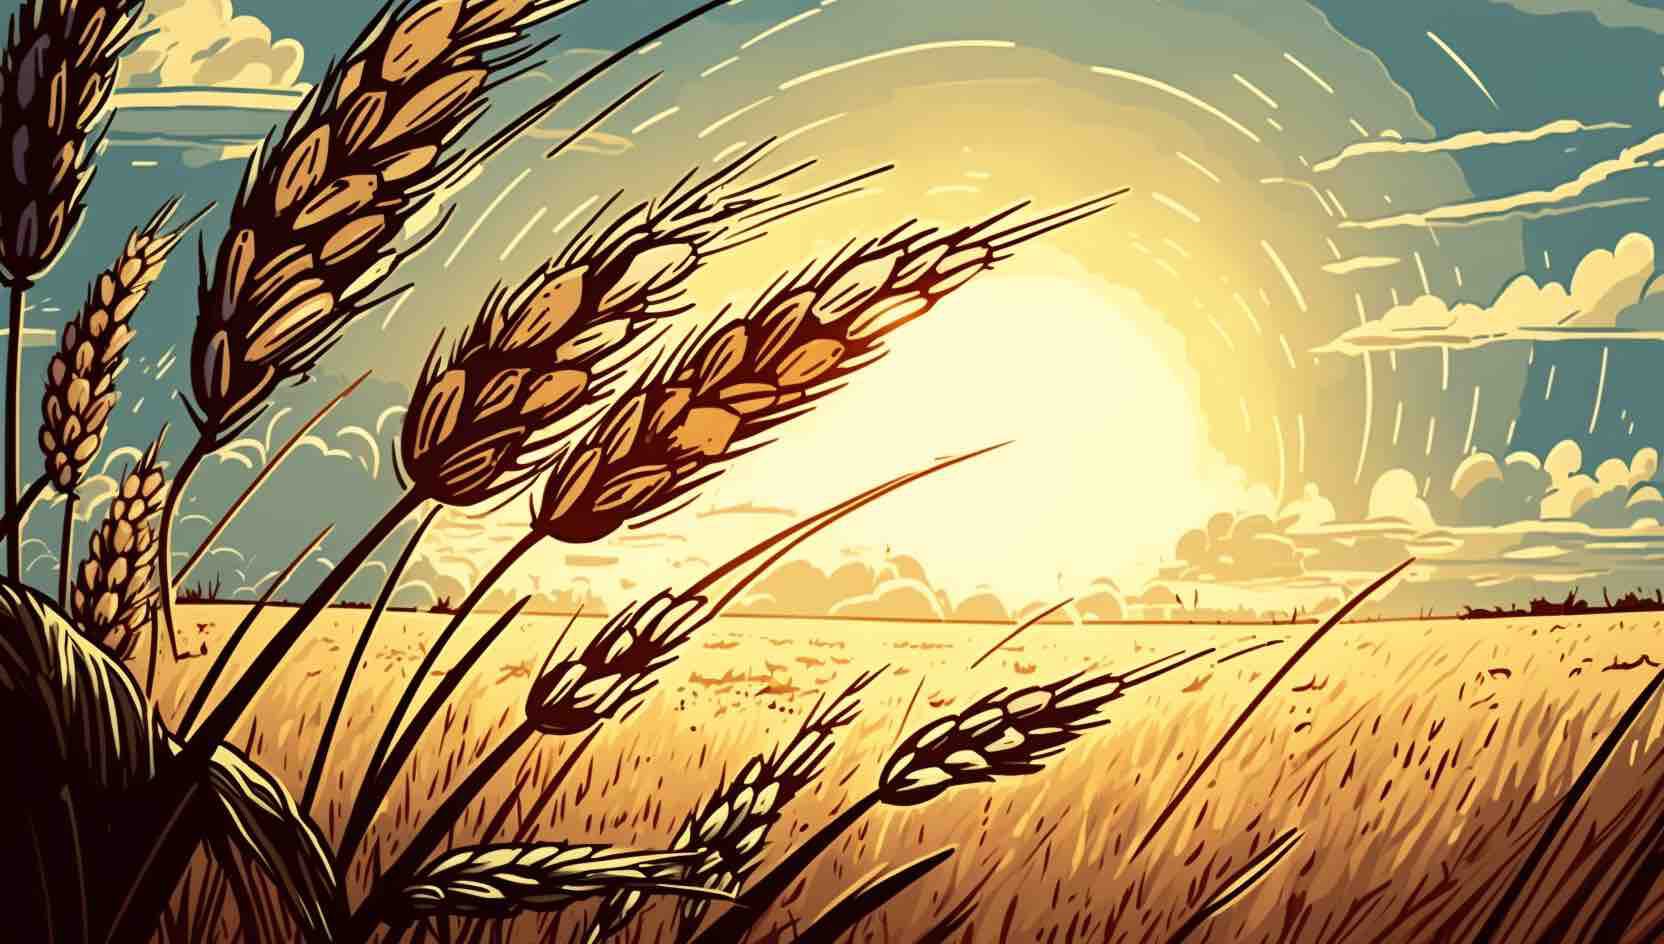 کاشت بذرهای پایداری: بررسی کشاورزی فشرده در مقابل کشاورزی گسترده (غلات)